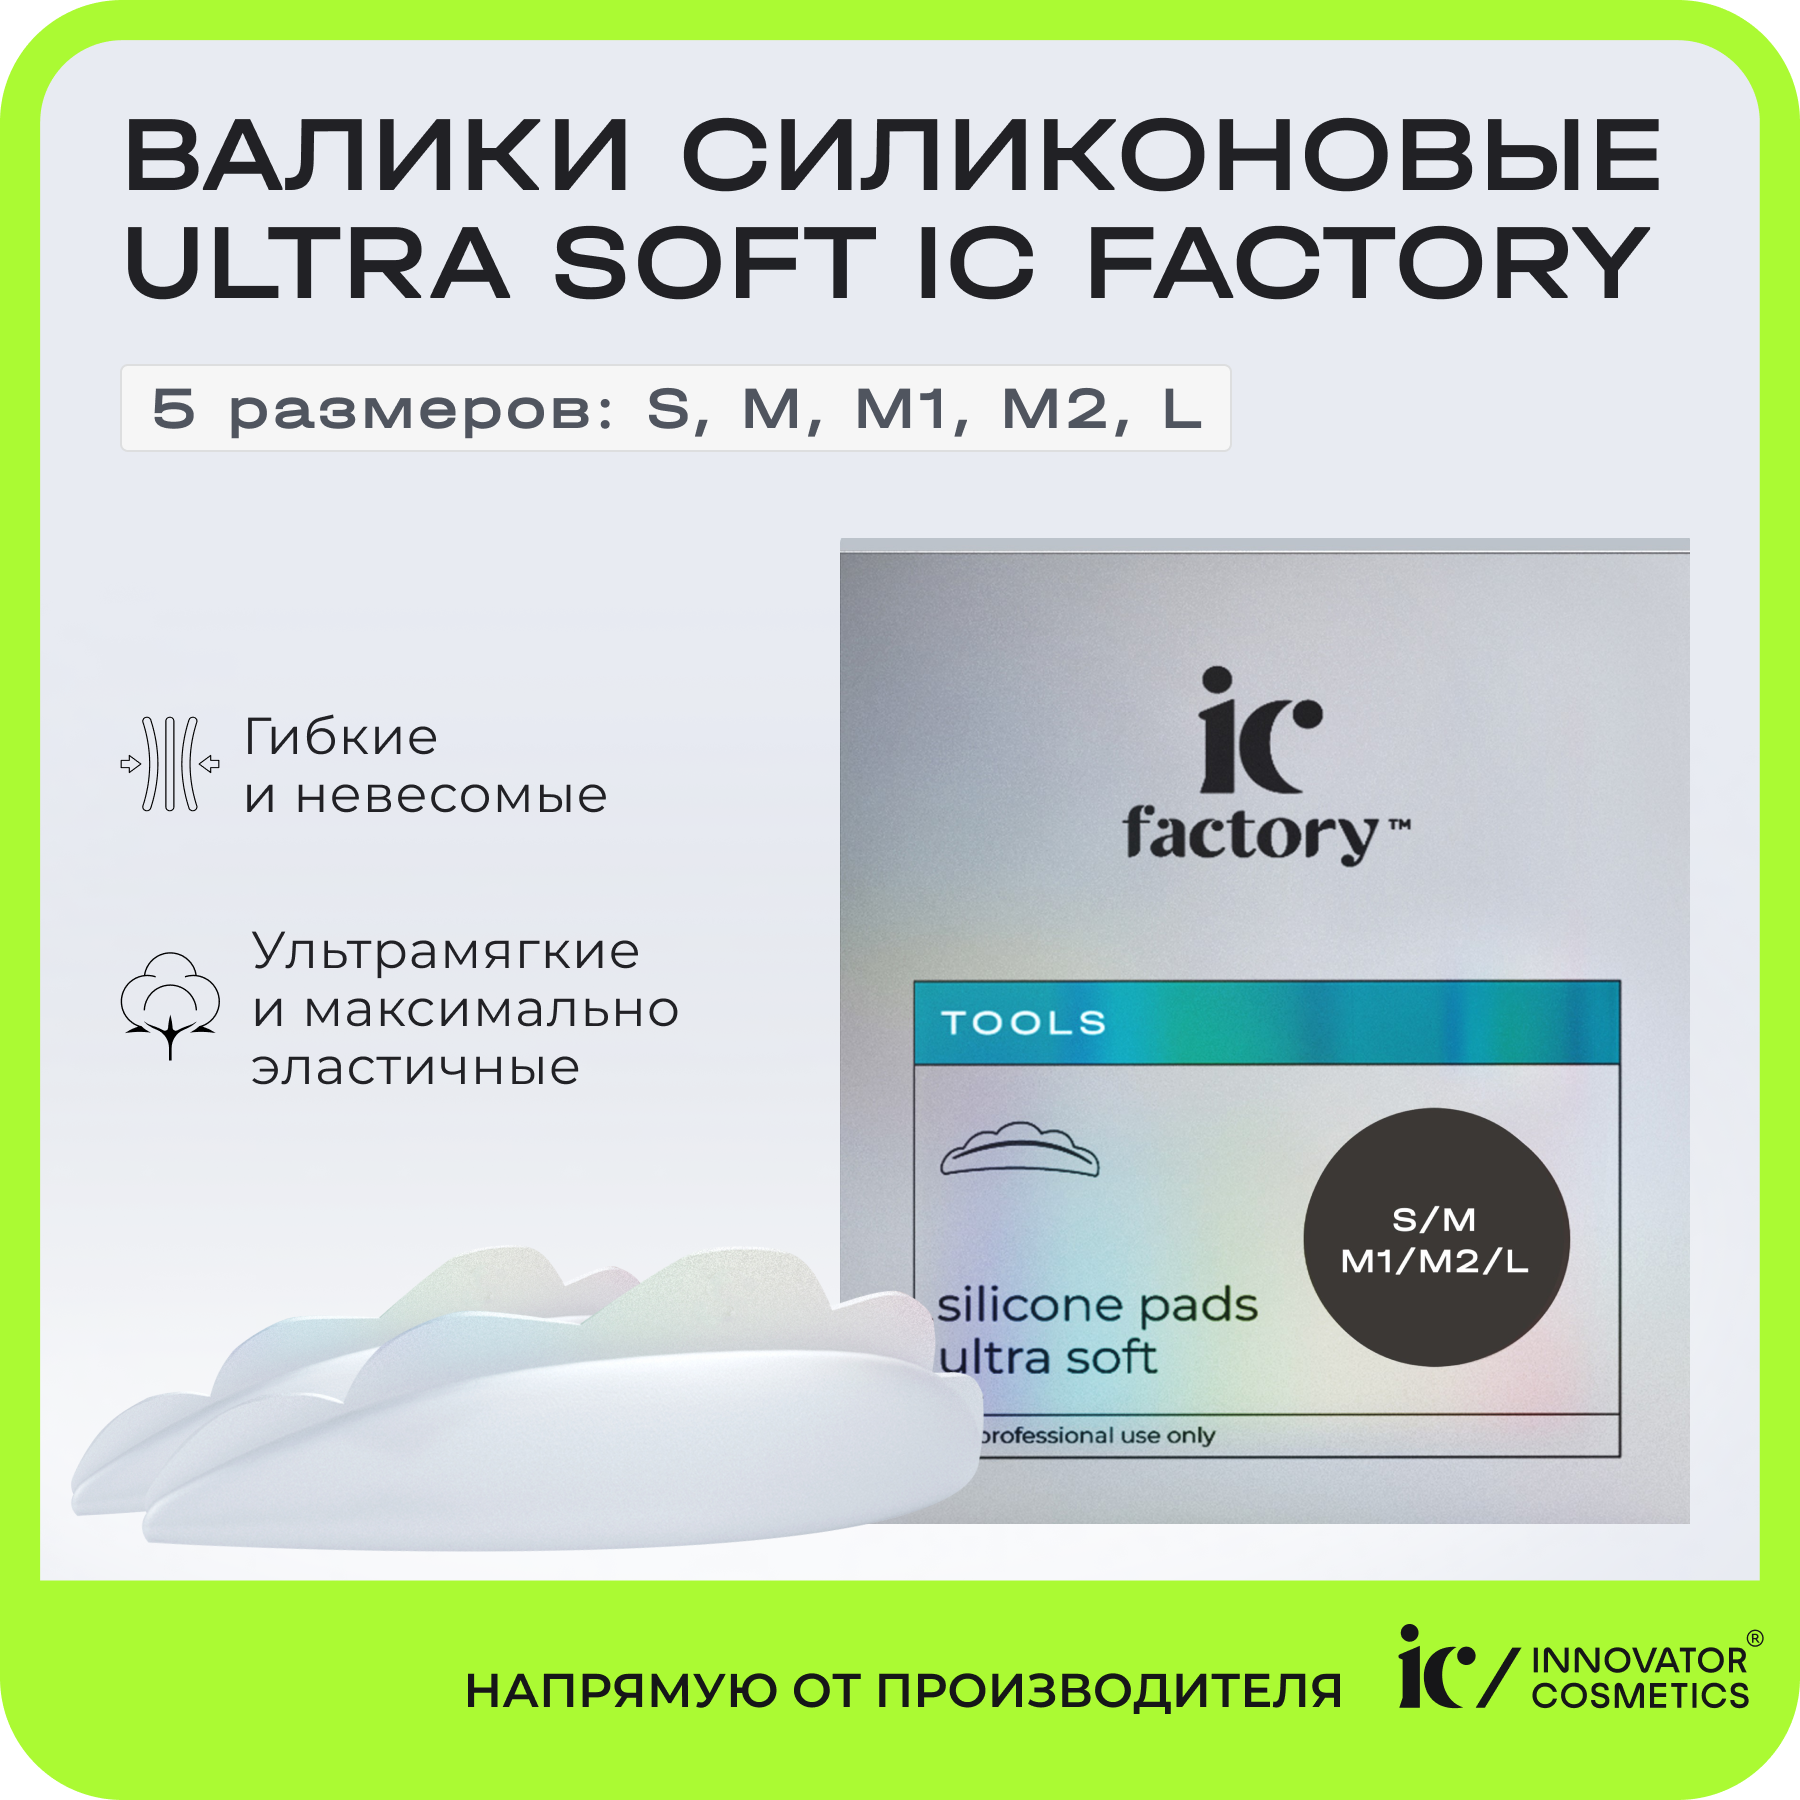 Набор валиков силиконовых Innovator Cosmetics Ultra Soft IC FACTORY, 5 размеров mcm подарочный набор mcm ultra